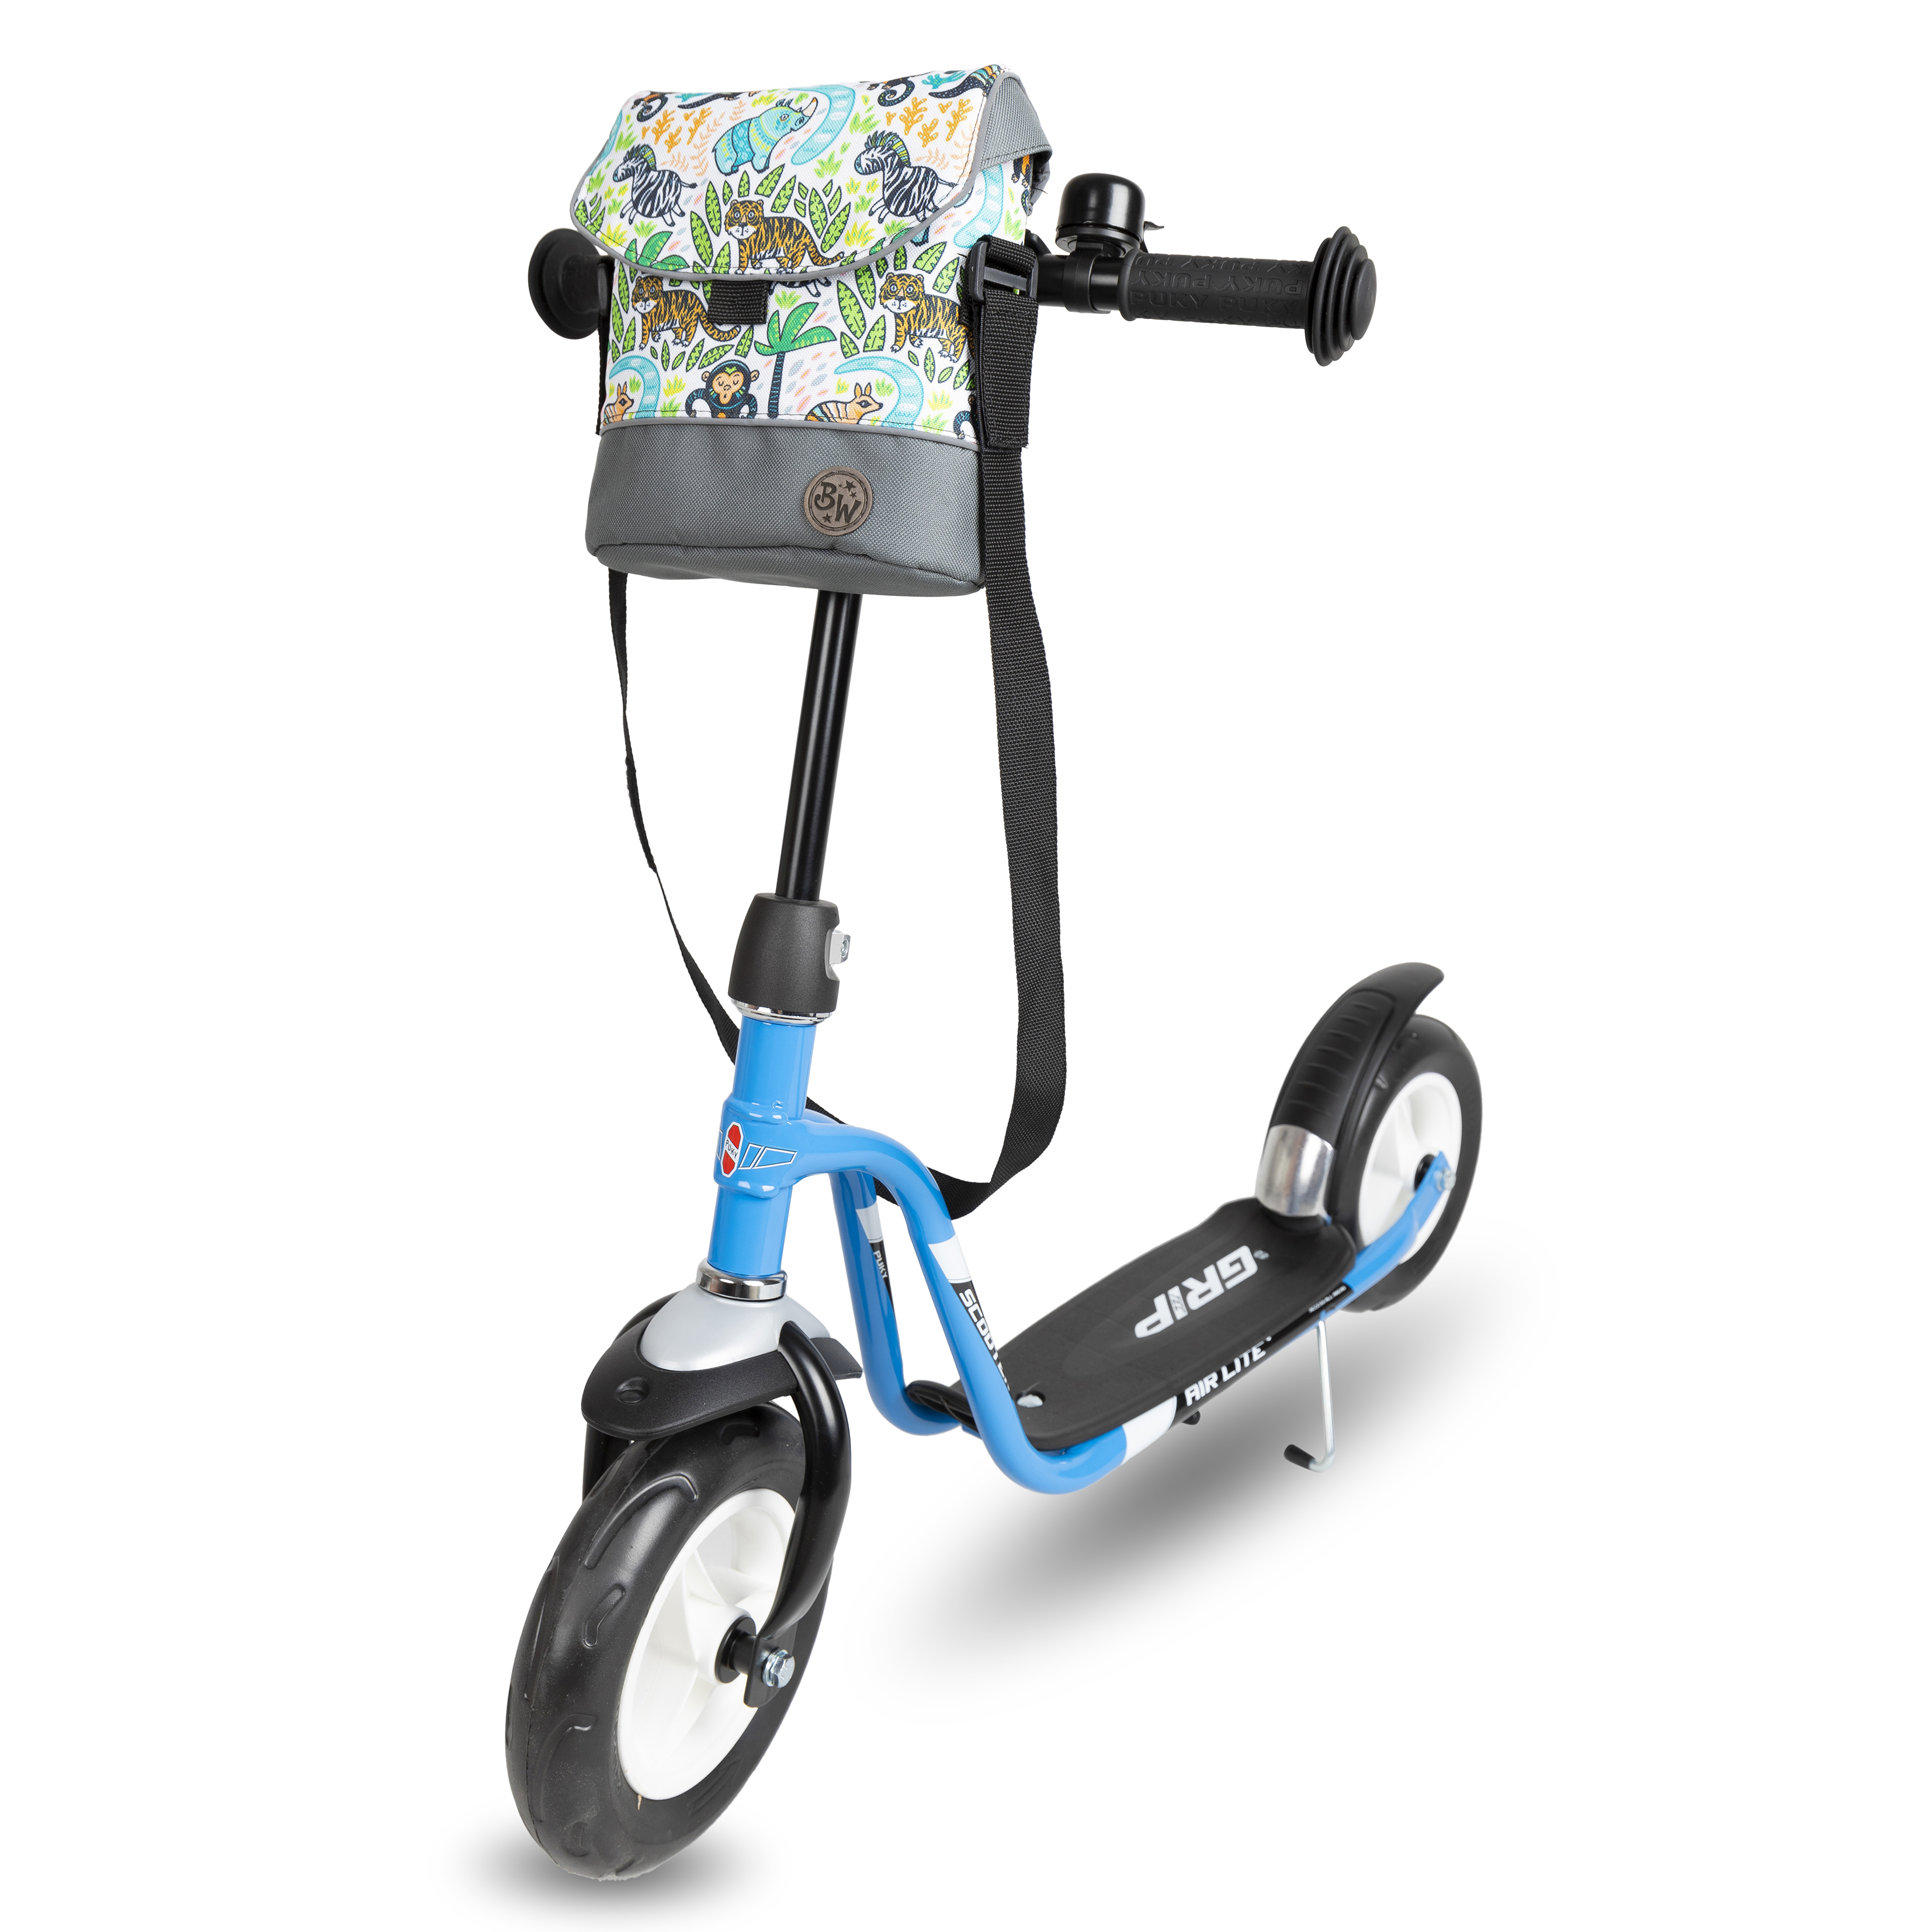 BAMBINIWELT Lenkertasche für Puky Roller Scooter Fahrrad Kinder Fahrradtasche 